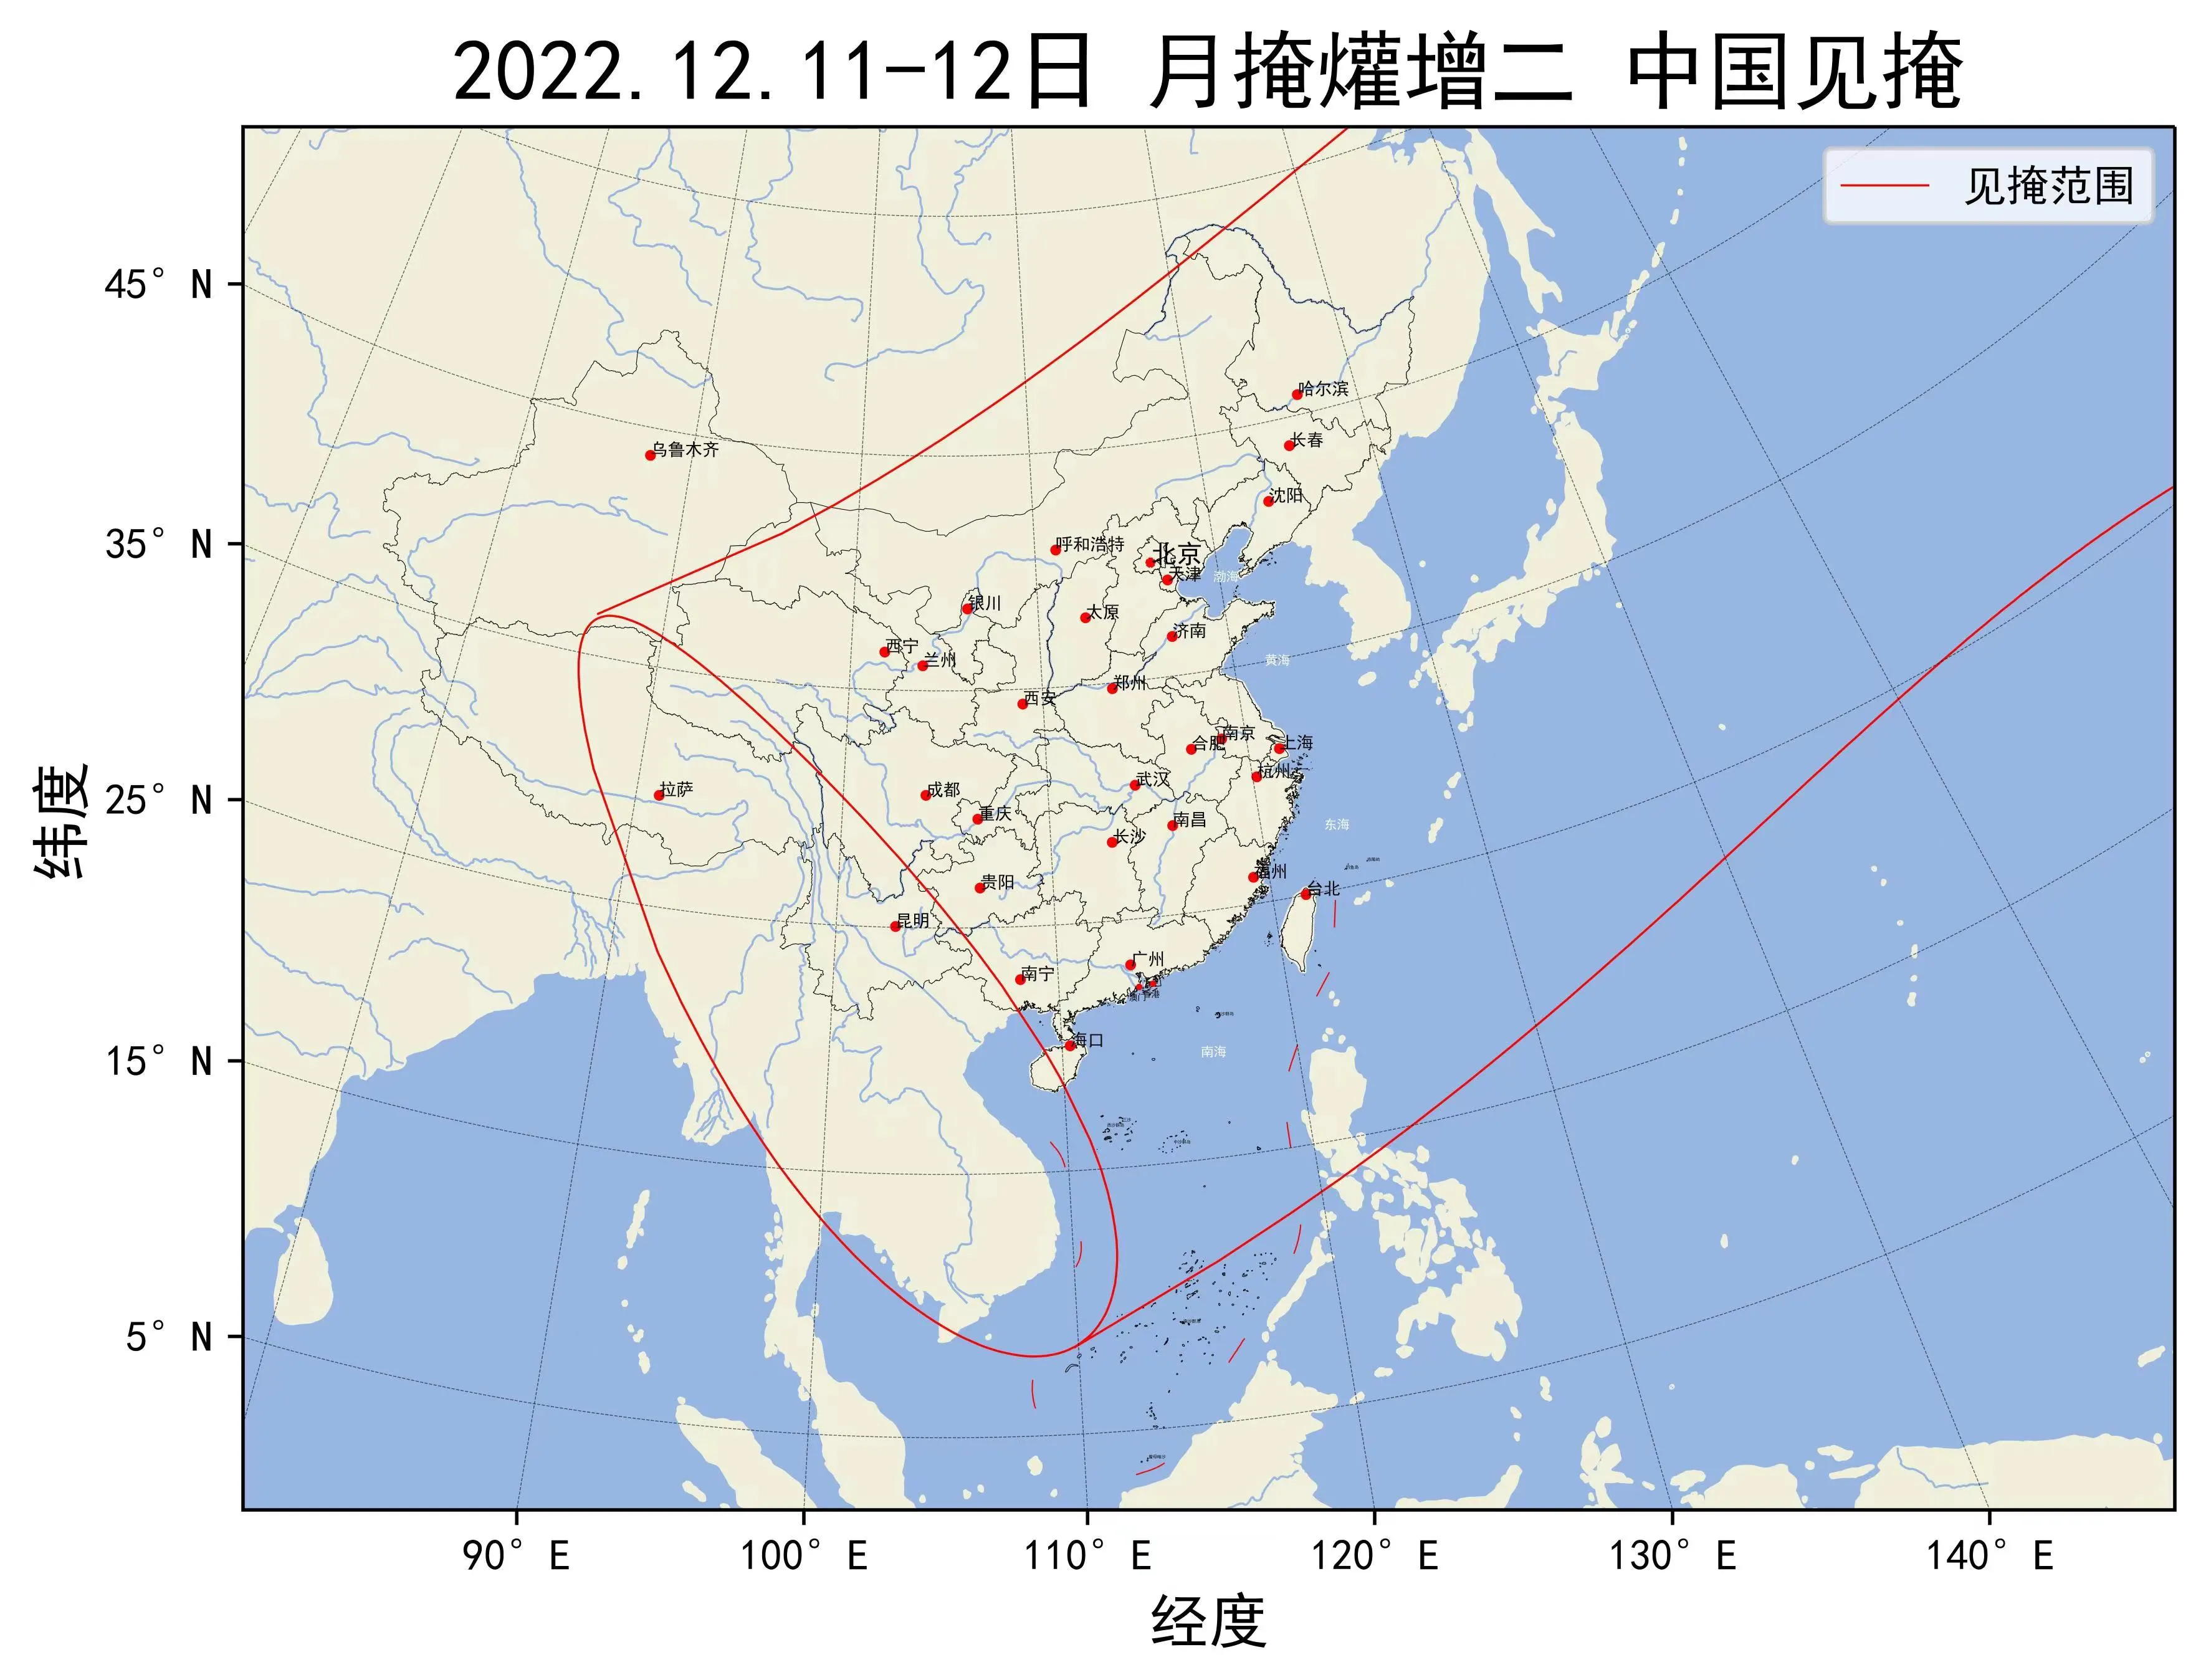 2022年12月11-12日月掩爟增二中国见掩